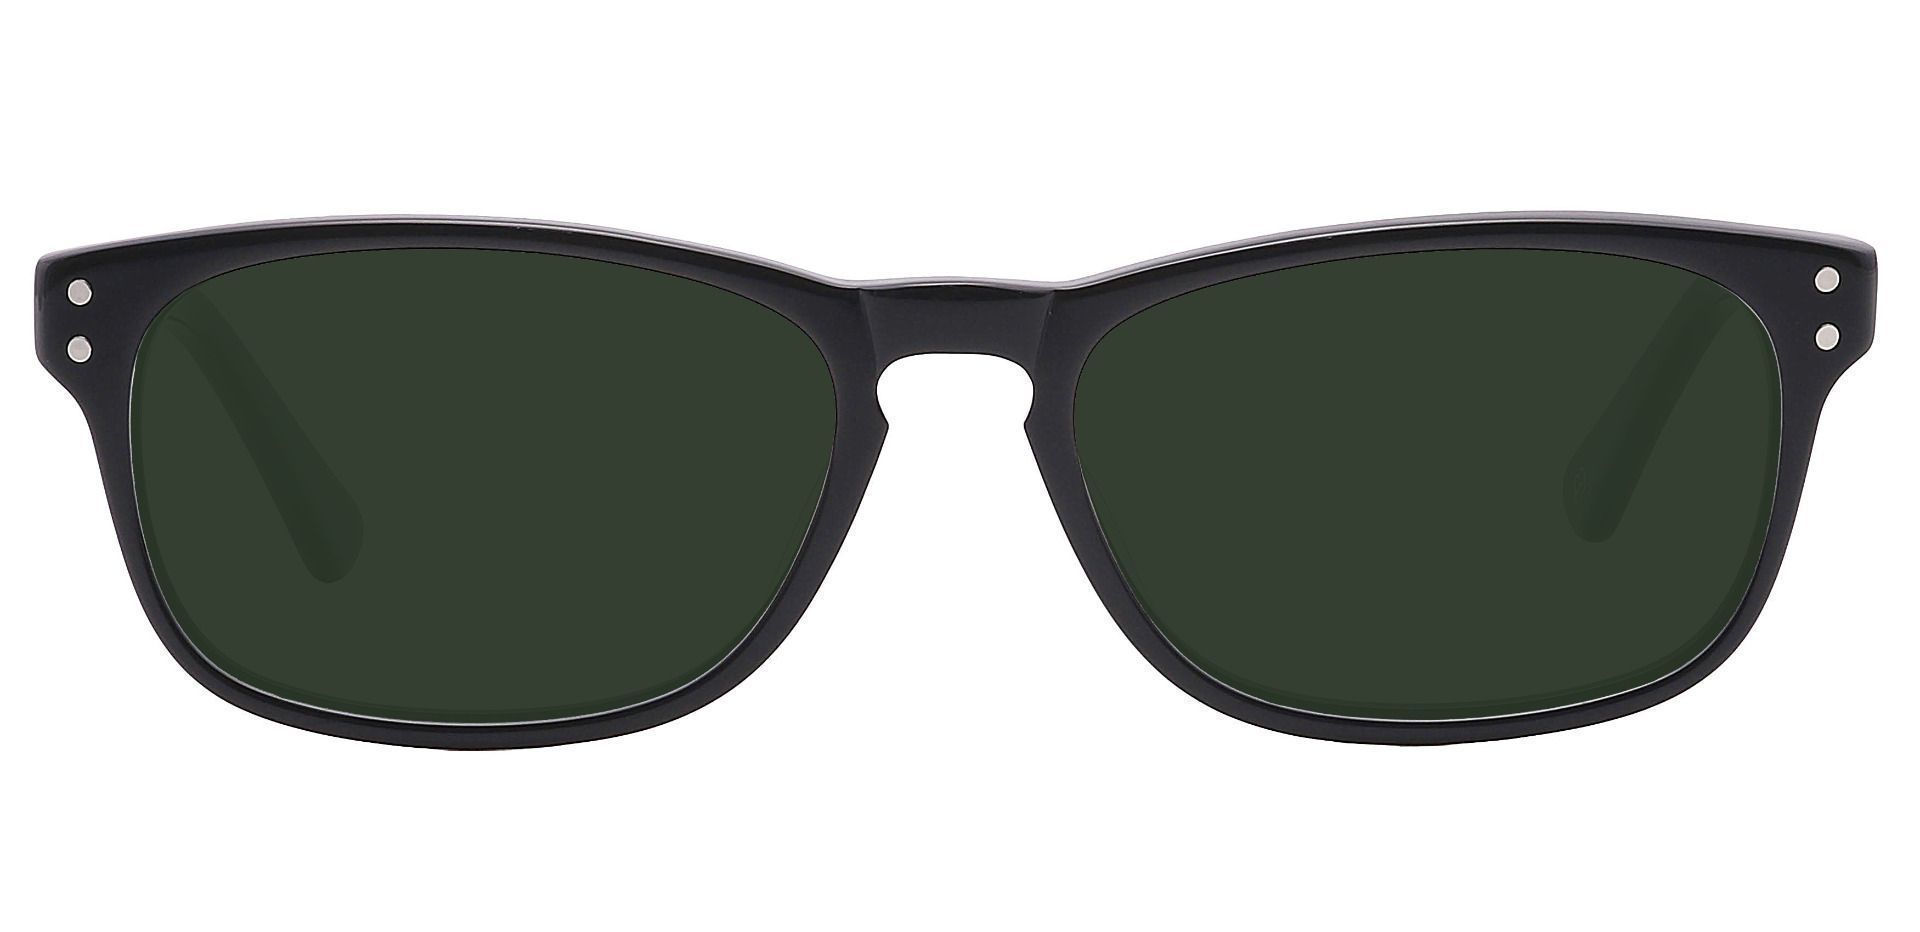 Morris Rectangle Reading Sunglasses - Black Frame With Green Lenses